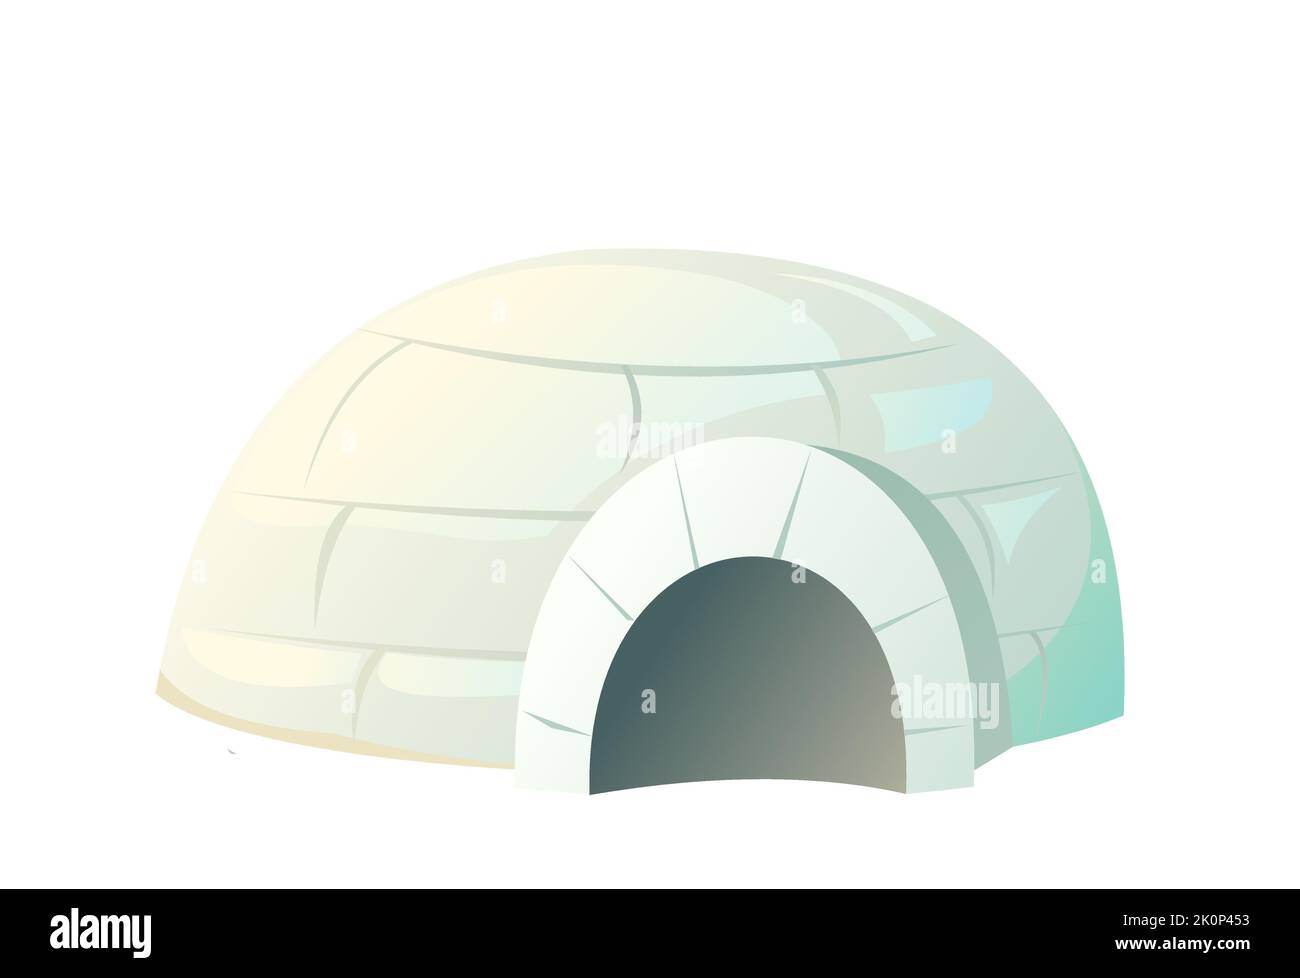 Maison igloo neige. Demeure des populations nomades du Nord dans l'Arctique. Des blocs de glace et de neige. Isolé sur fond blanc. Vecteur d'illustration. Illustration de Vecteur